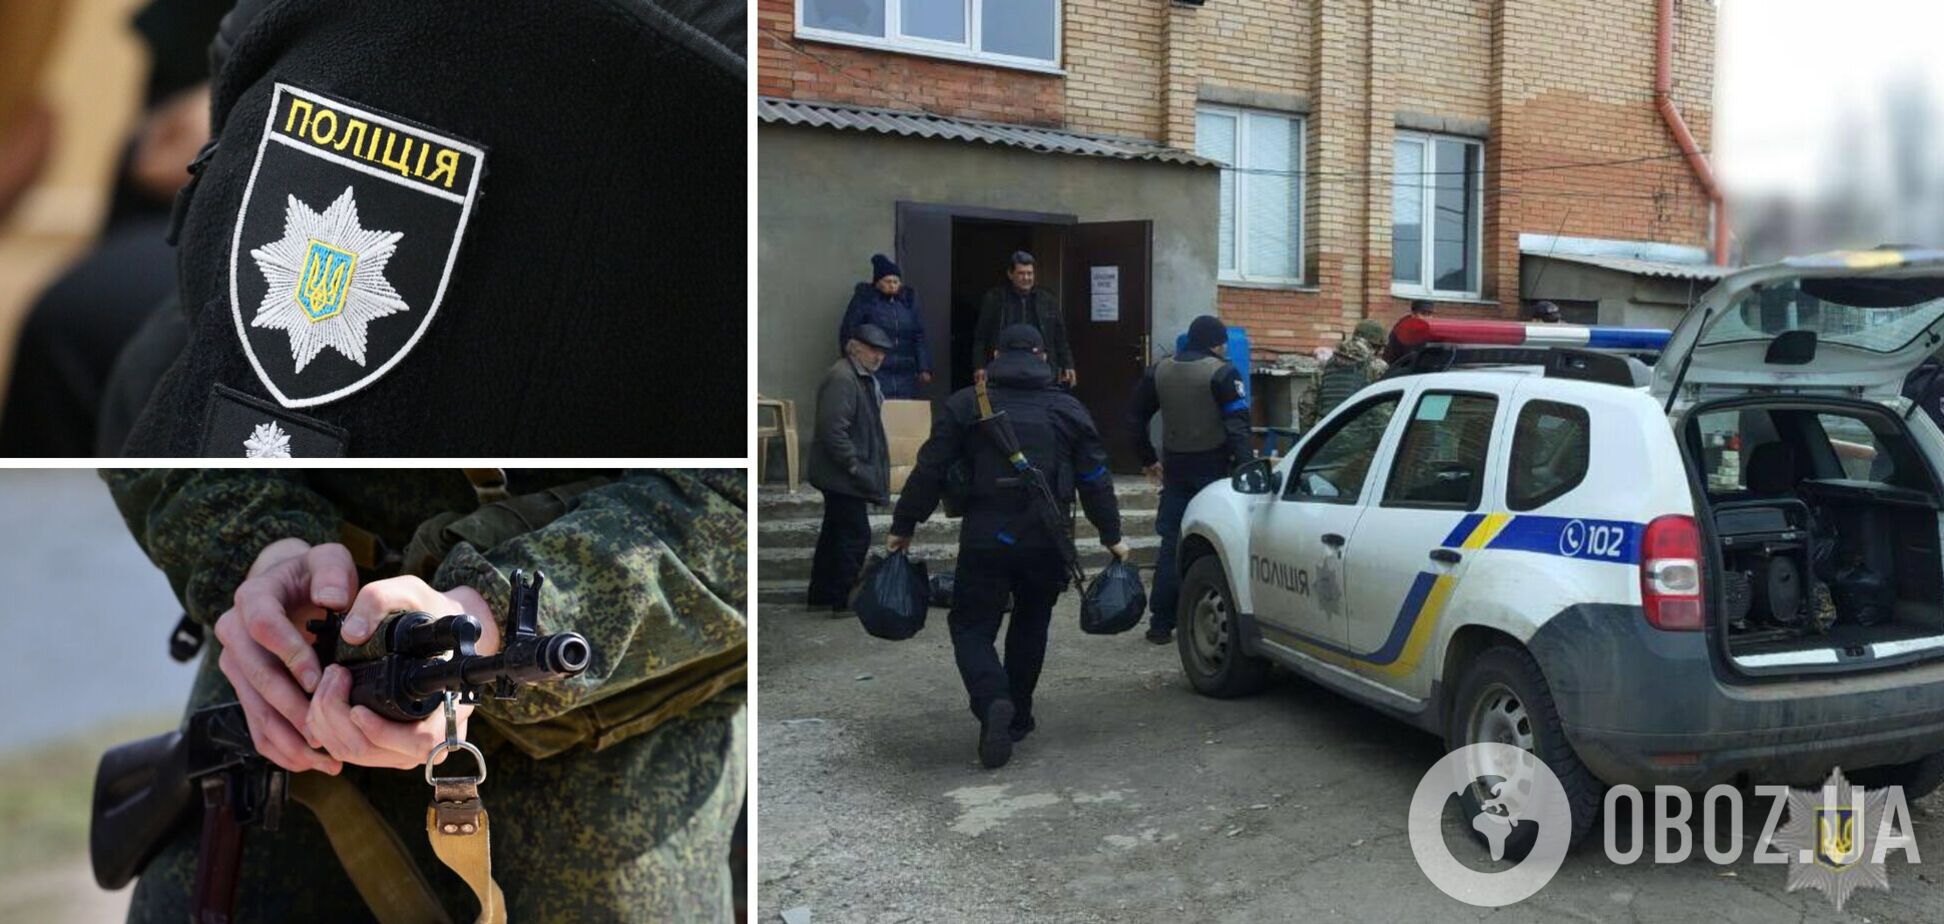 Солдати РФ завадили поліції доставити гумдопомогу